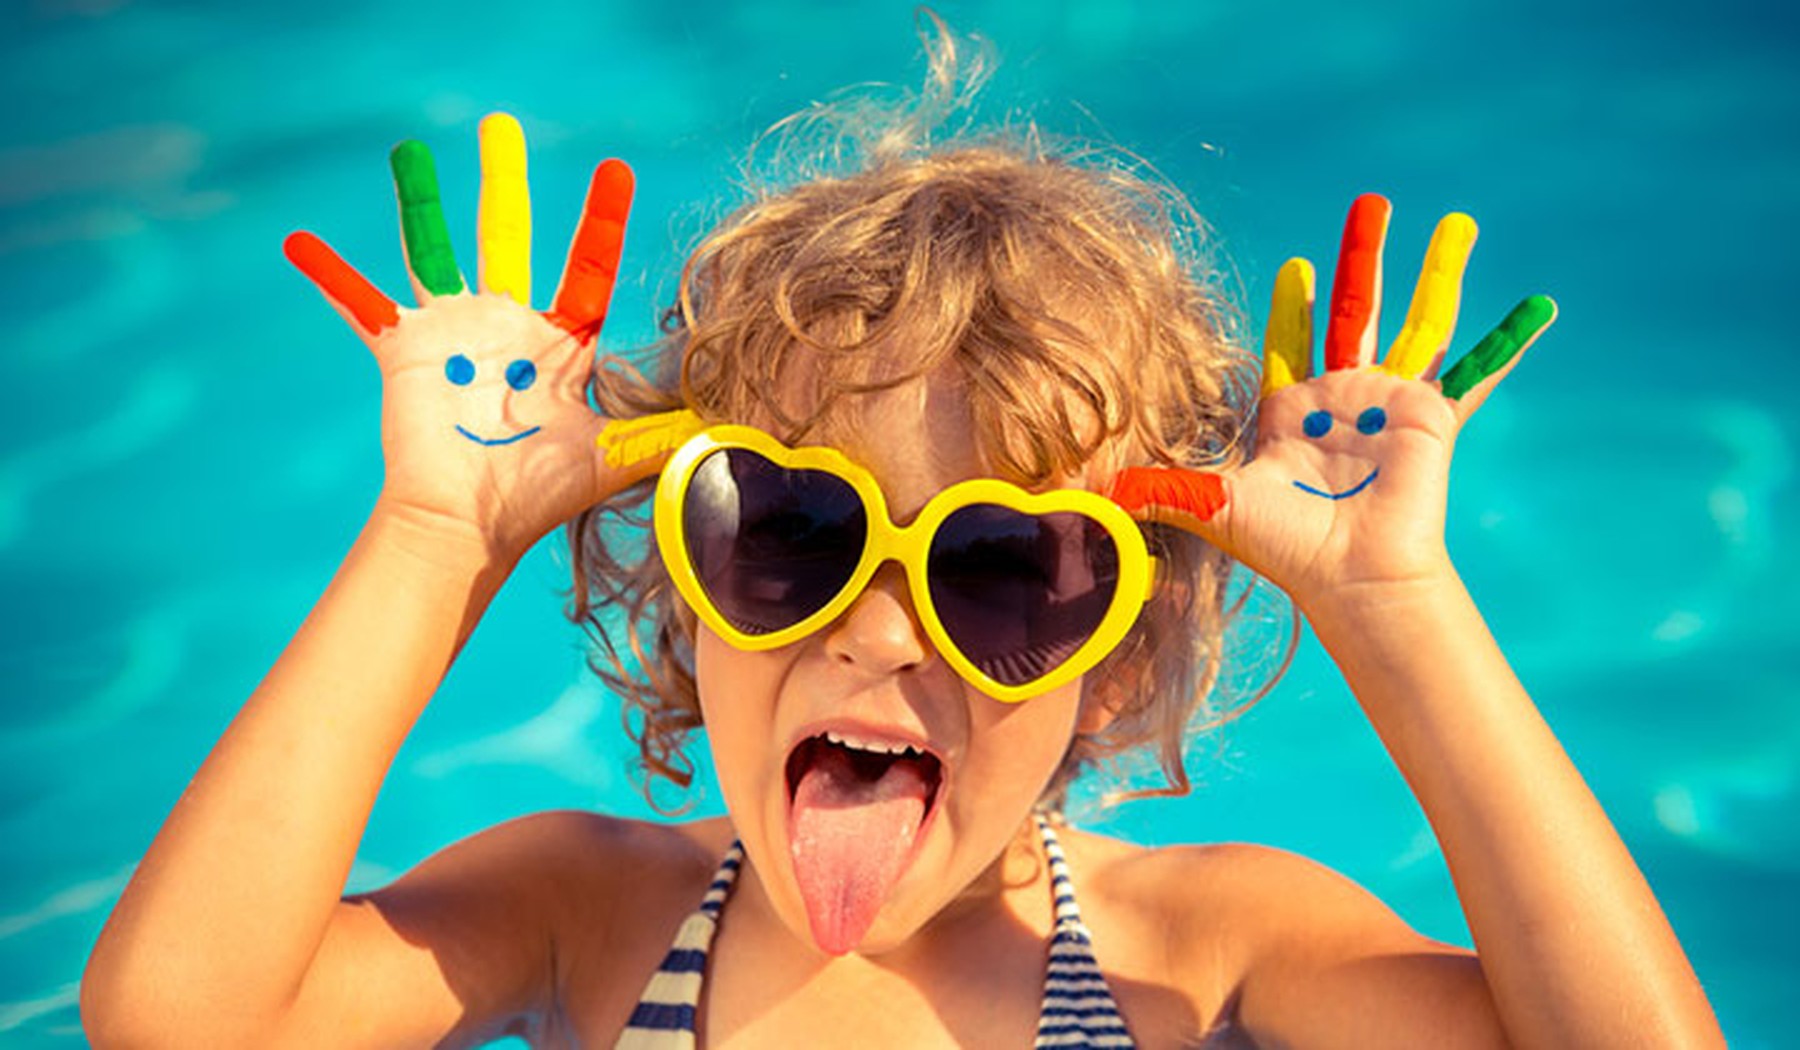 Una niña con el pelo corto y rizado en una piscina con unas gafas de sol amarillas en forma de corazón y las manos pintadas de colores. Tiene las manos a la altura de la cabeza y saca la lengua.